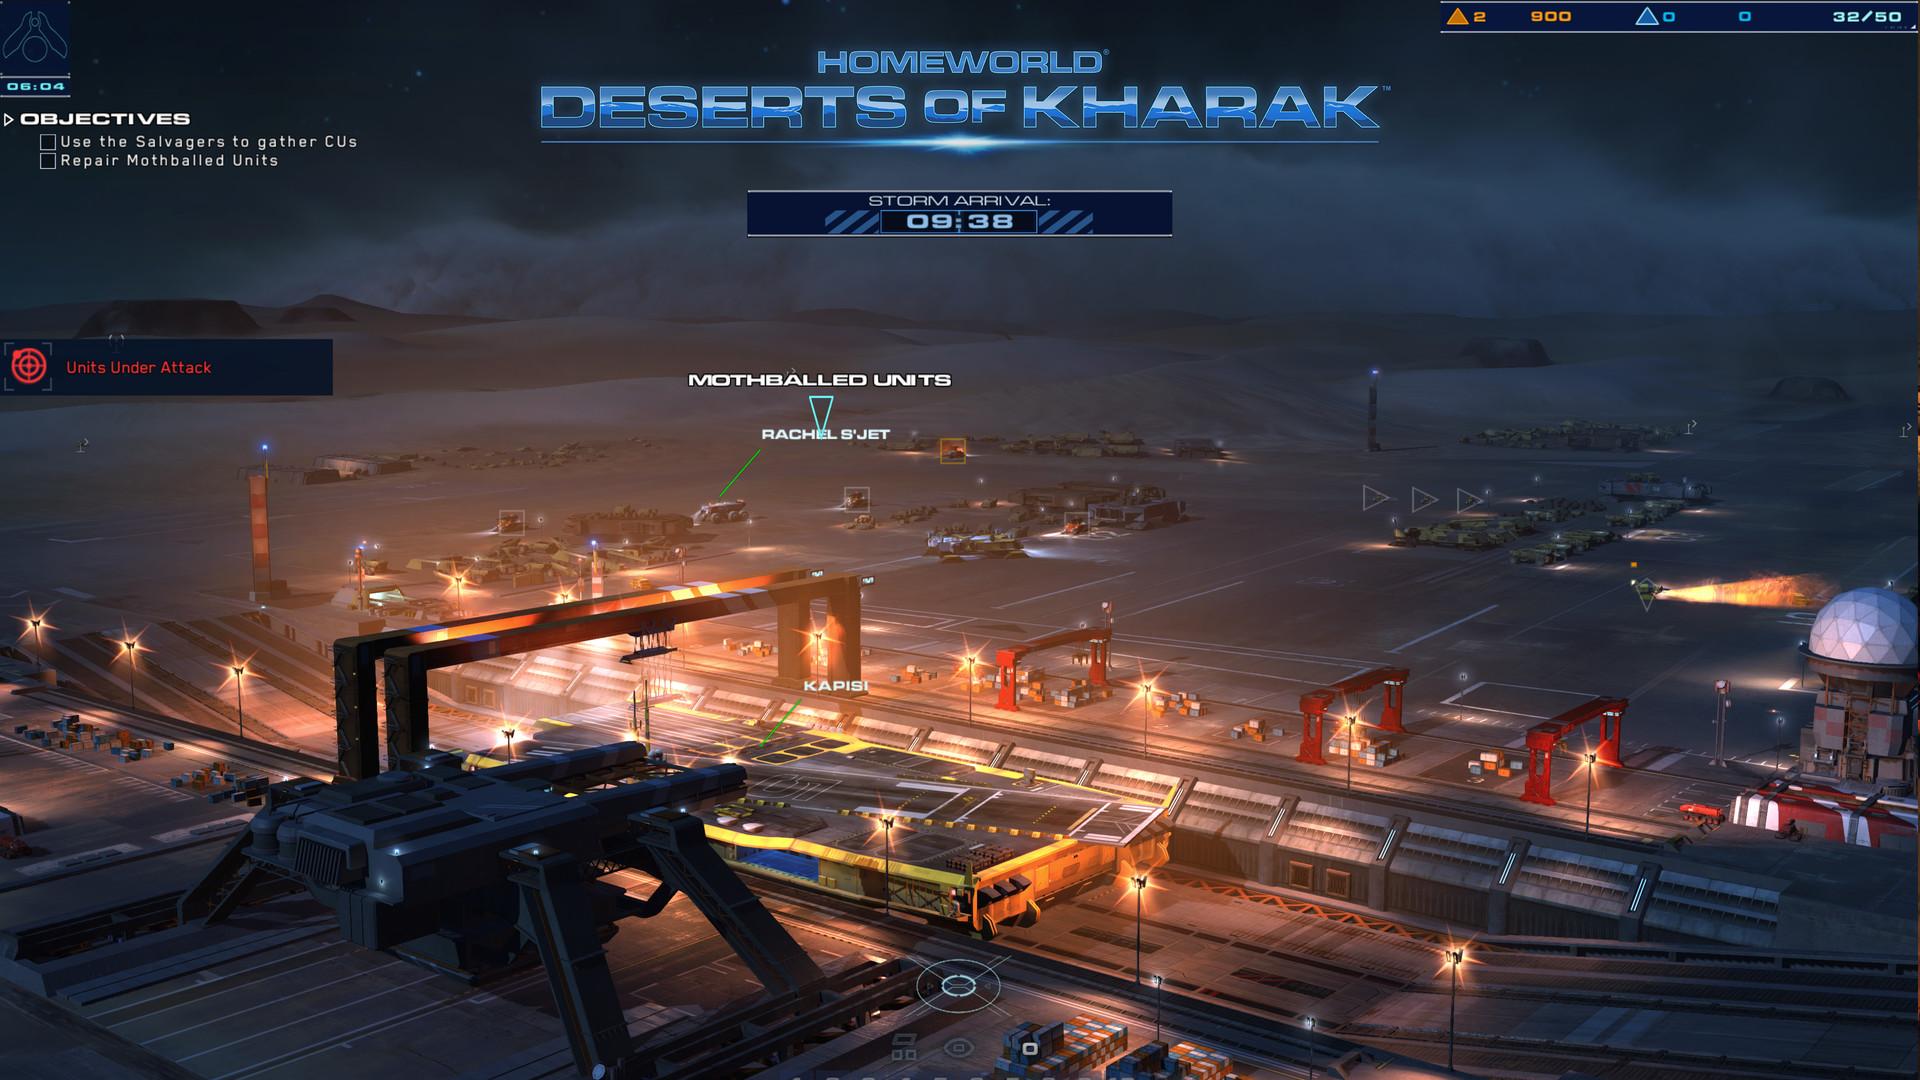 Screenshot №4 from game Homeworld: Deserts of Kharak